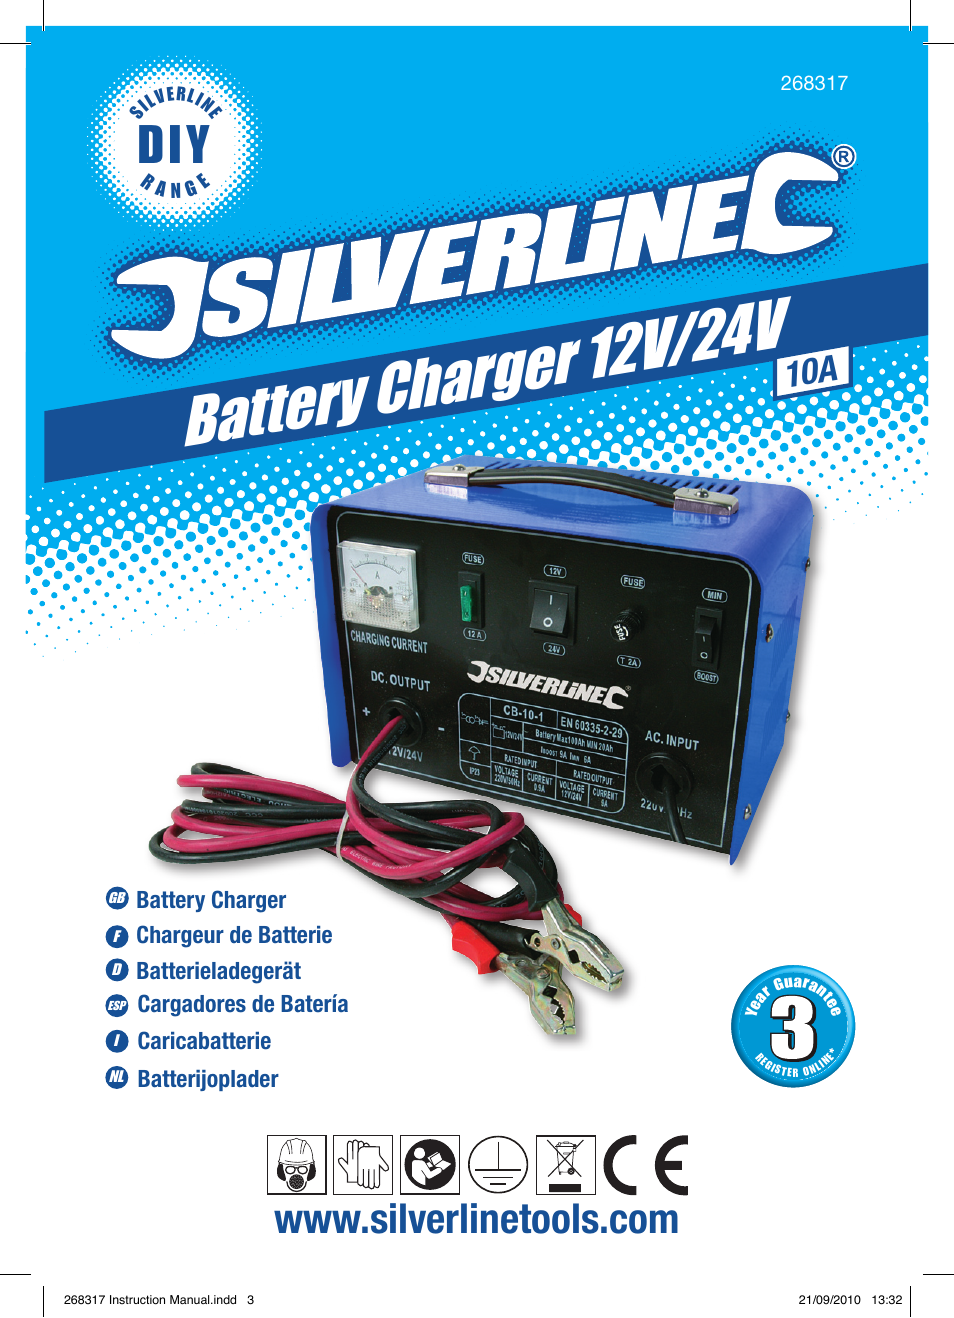 Battery charger 12v /24v | Silverline Battery Charger 12/24V User Manual |  Page 2 / 28